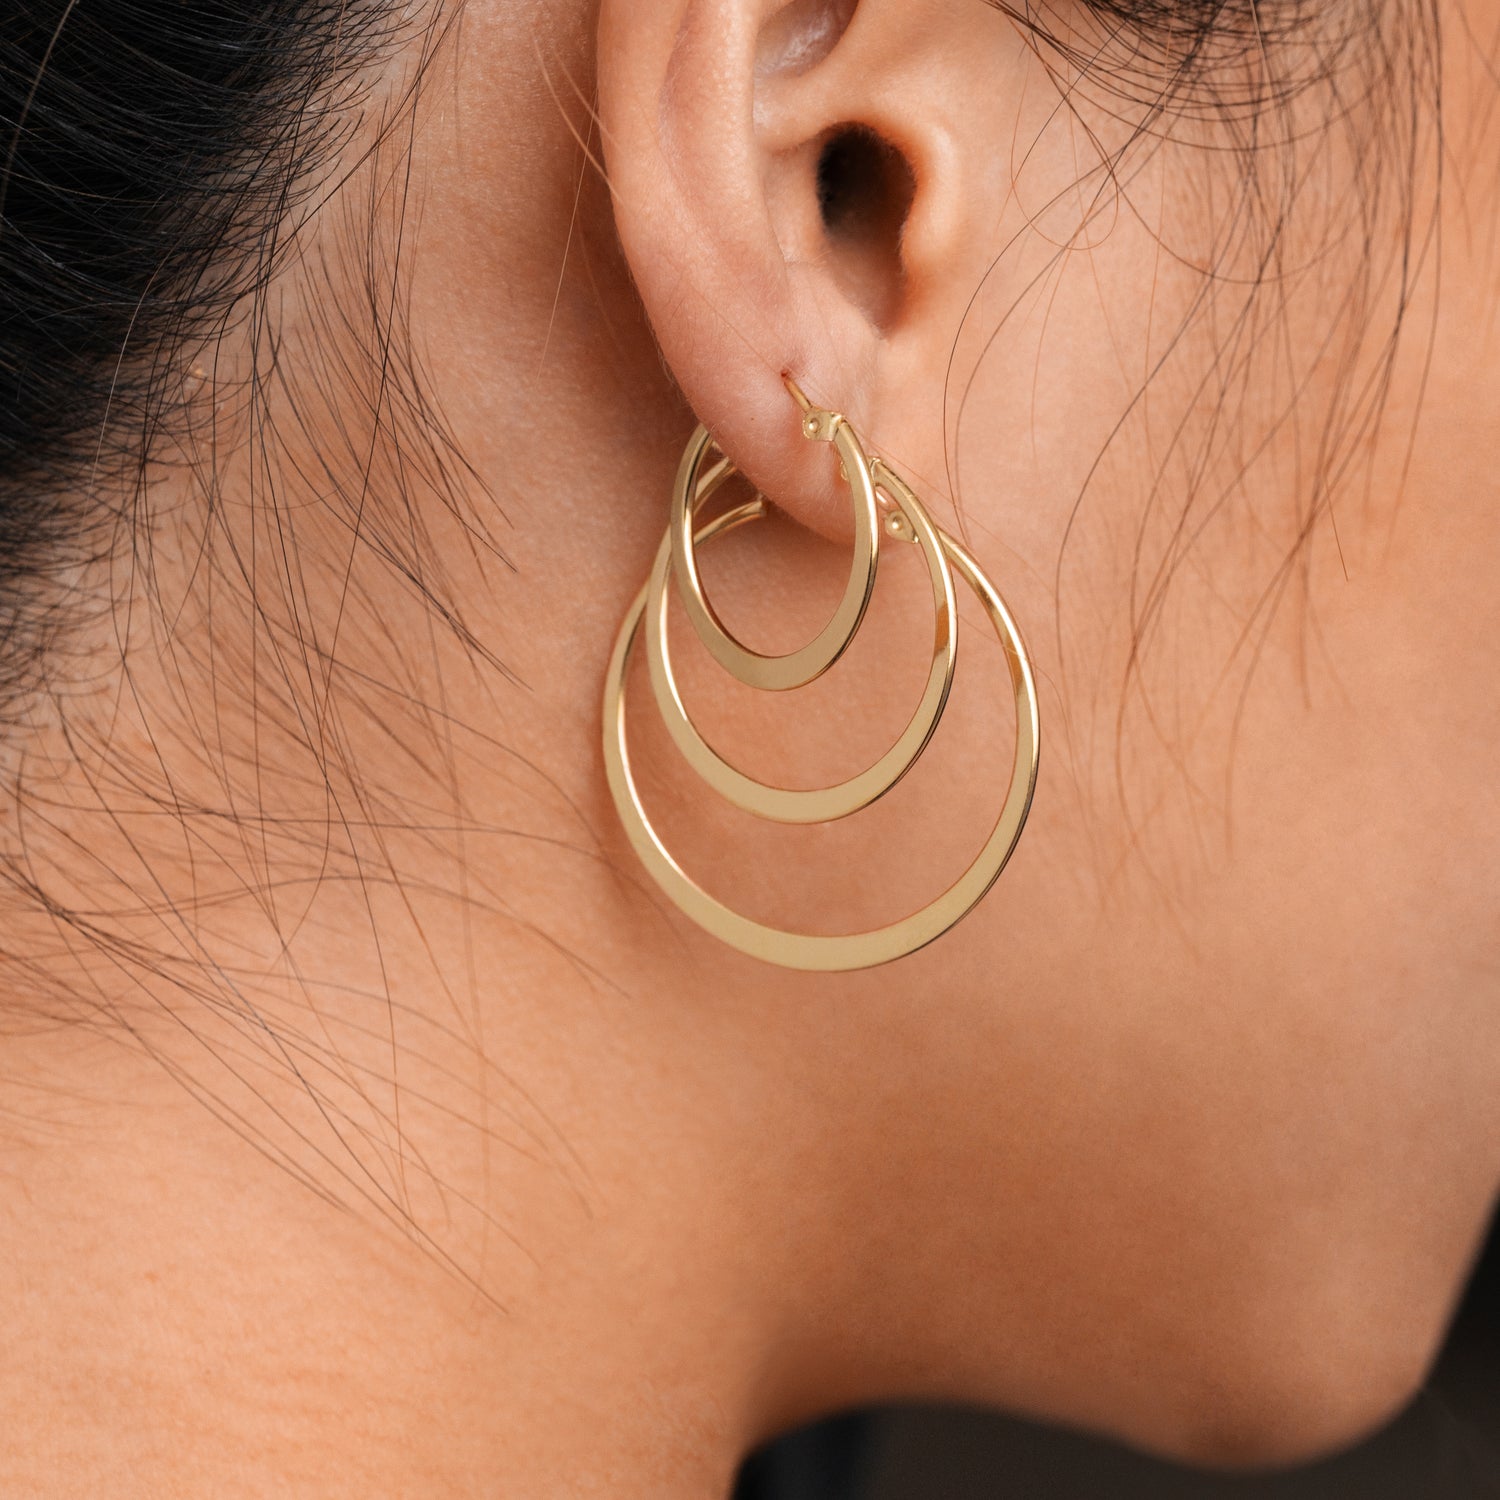 J&CO Jewellery Cross Dangle Hoop Earrings Gold